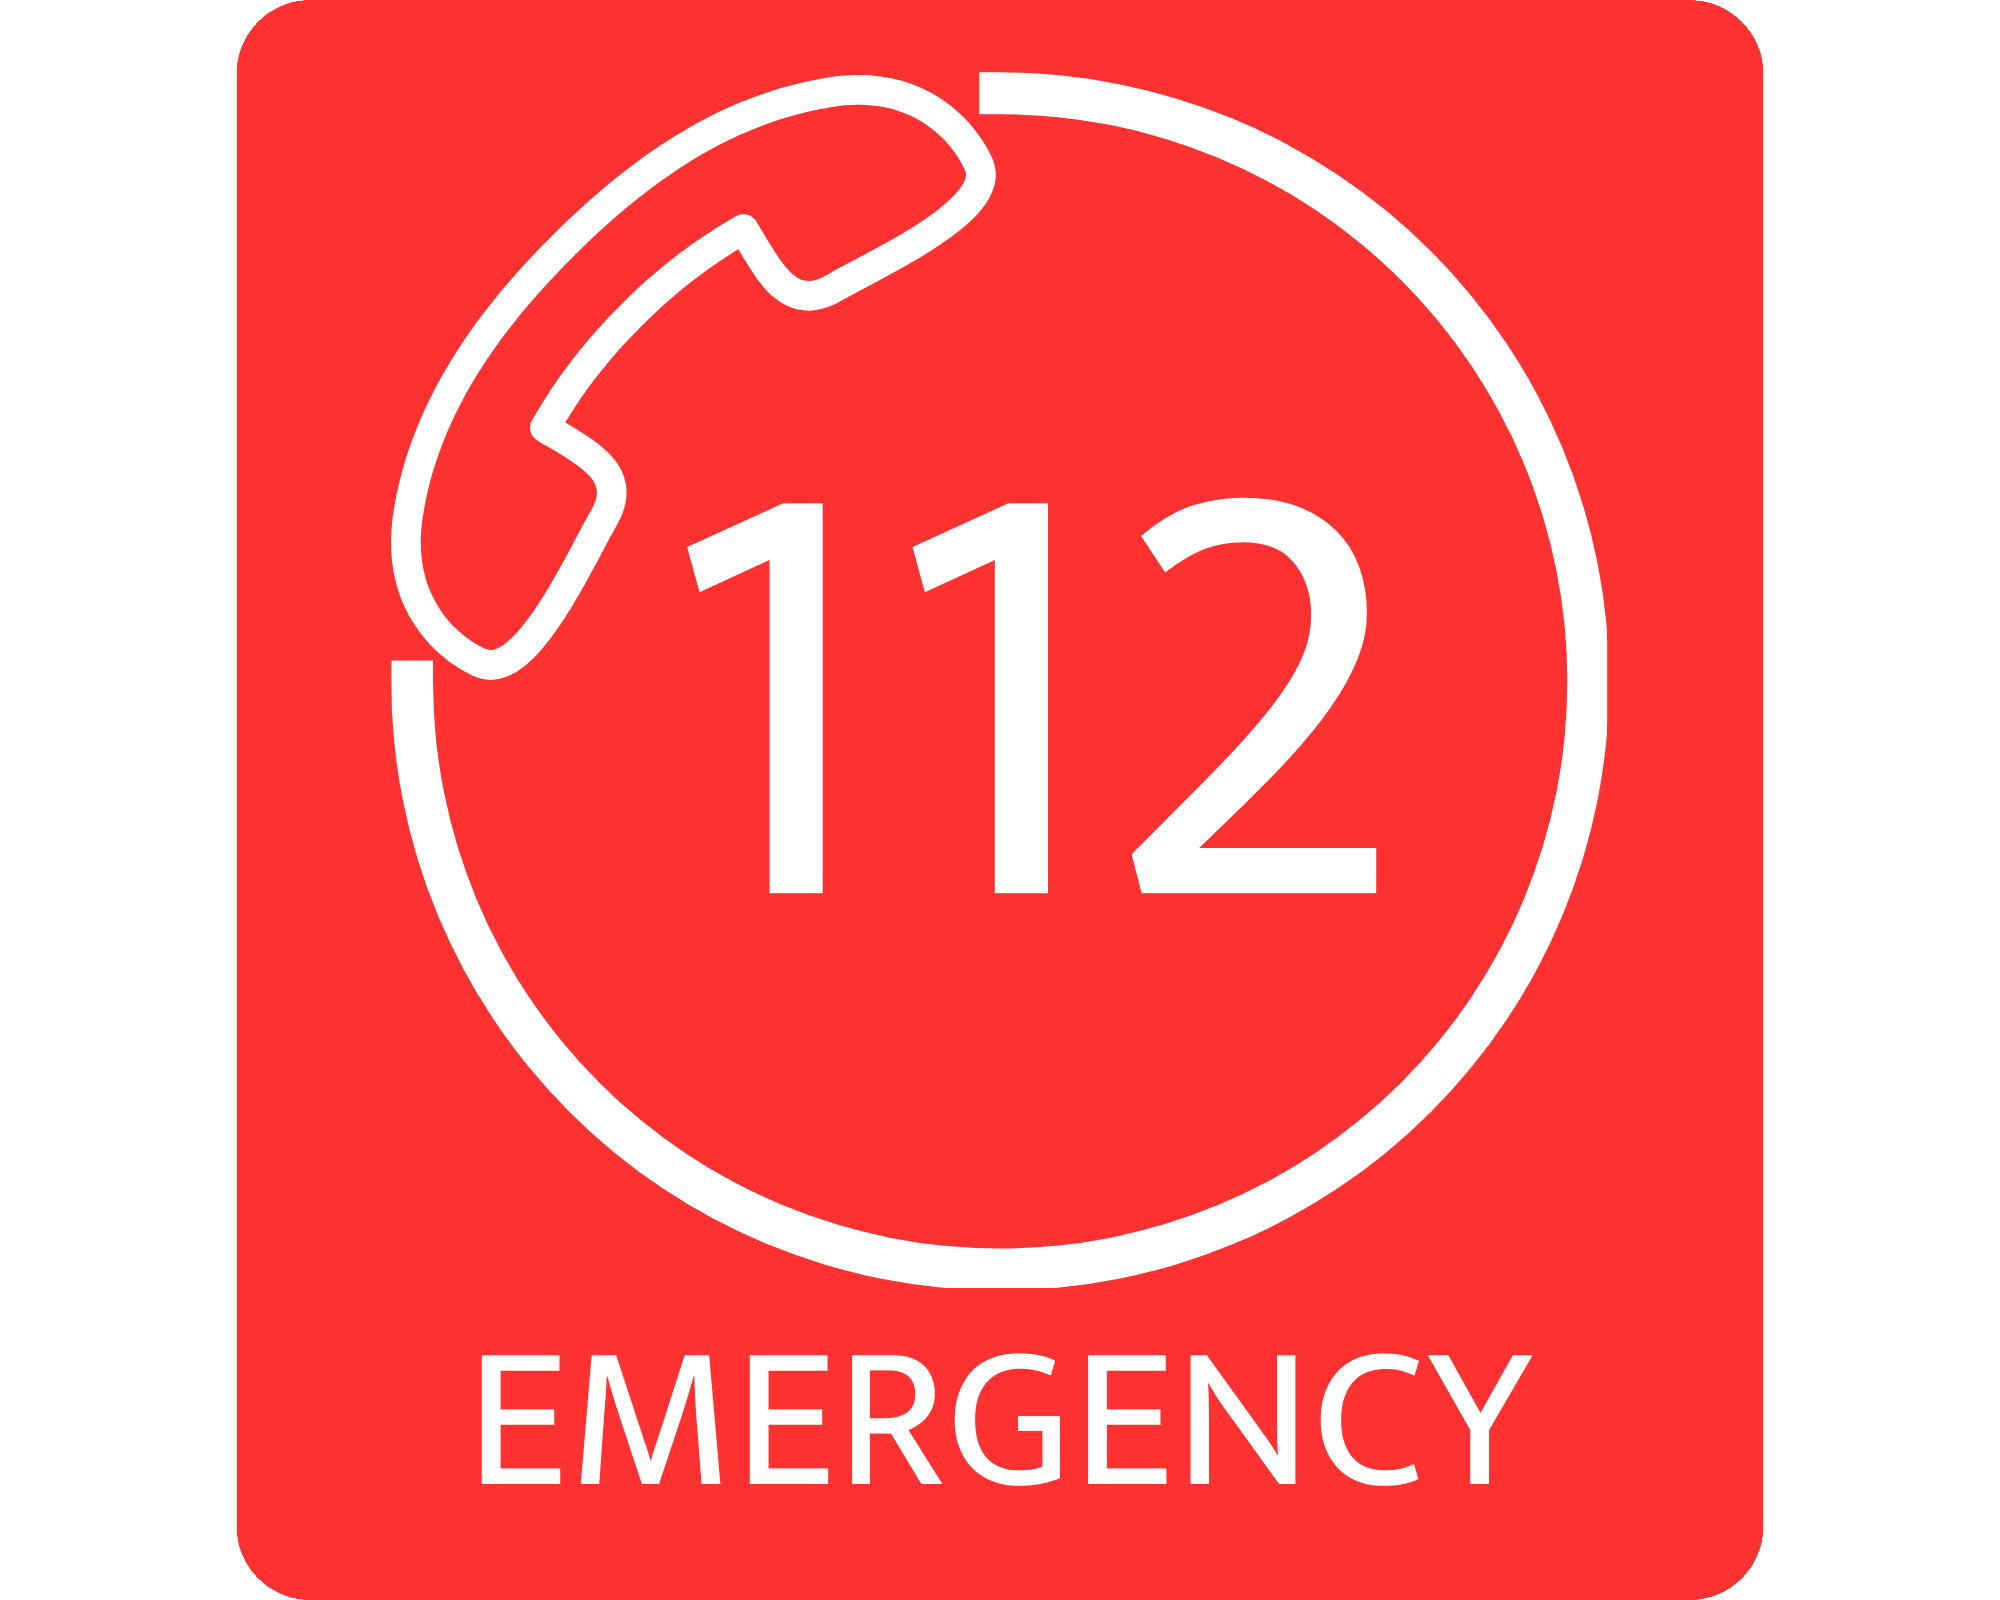 Numéro d'urgence européen 112